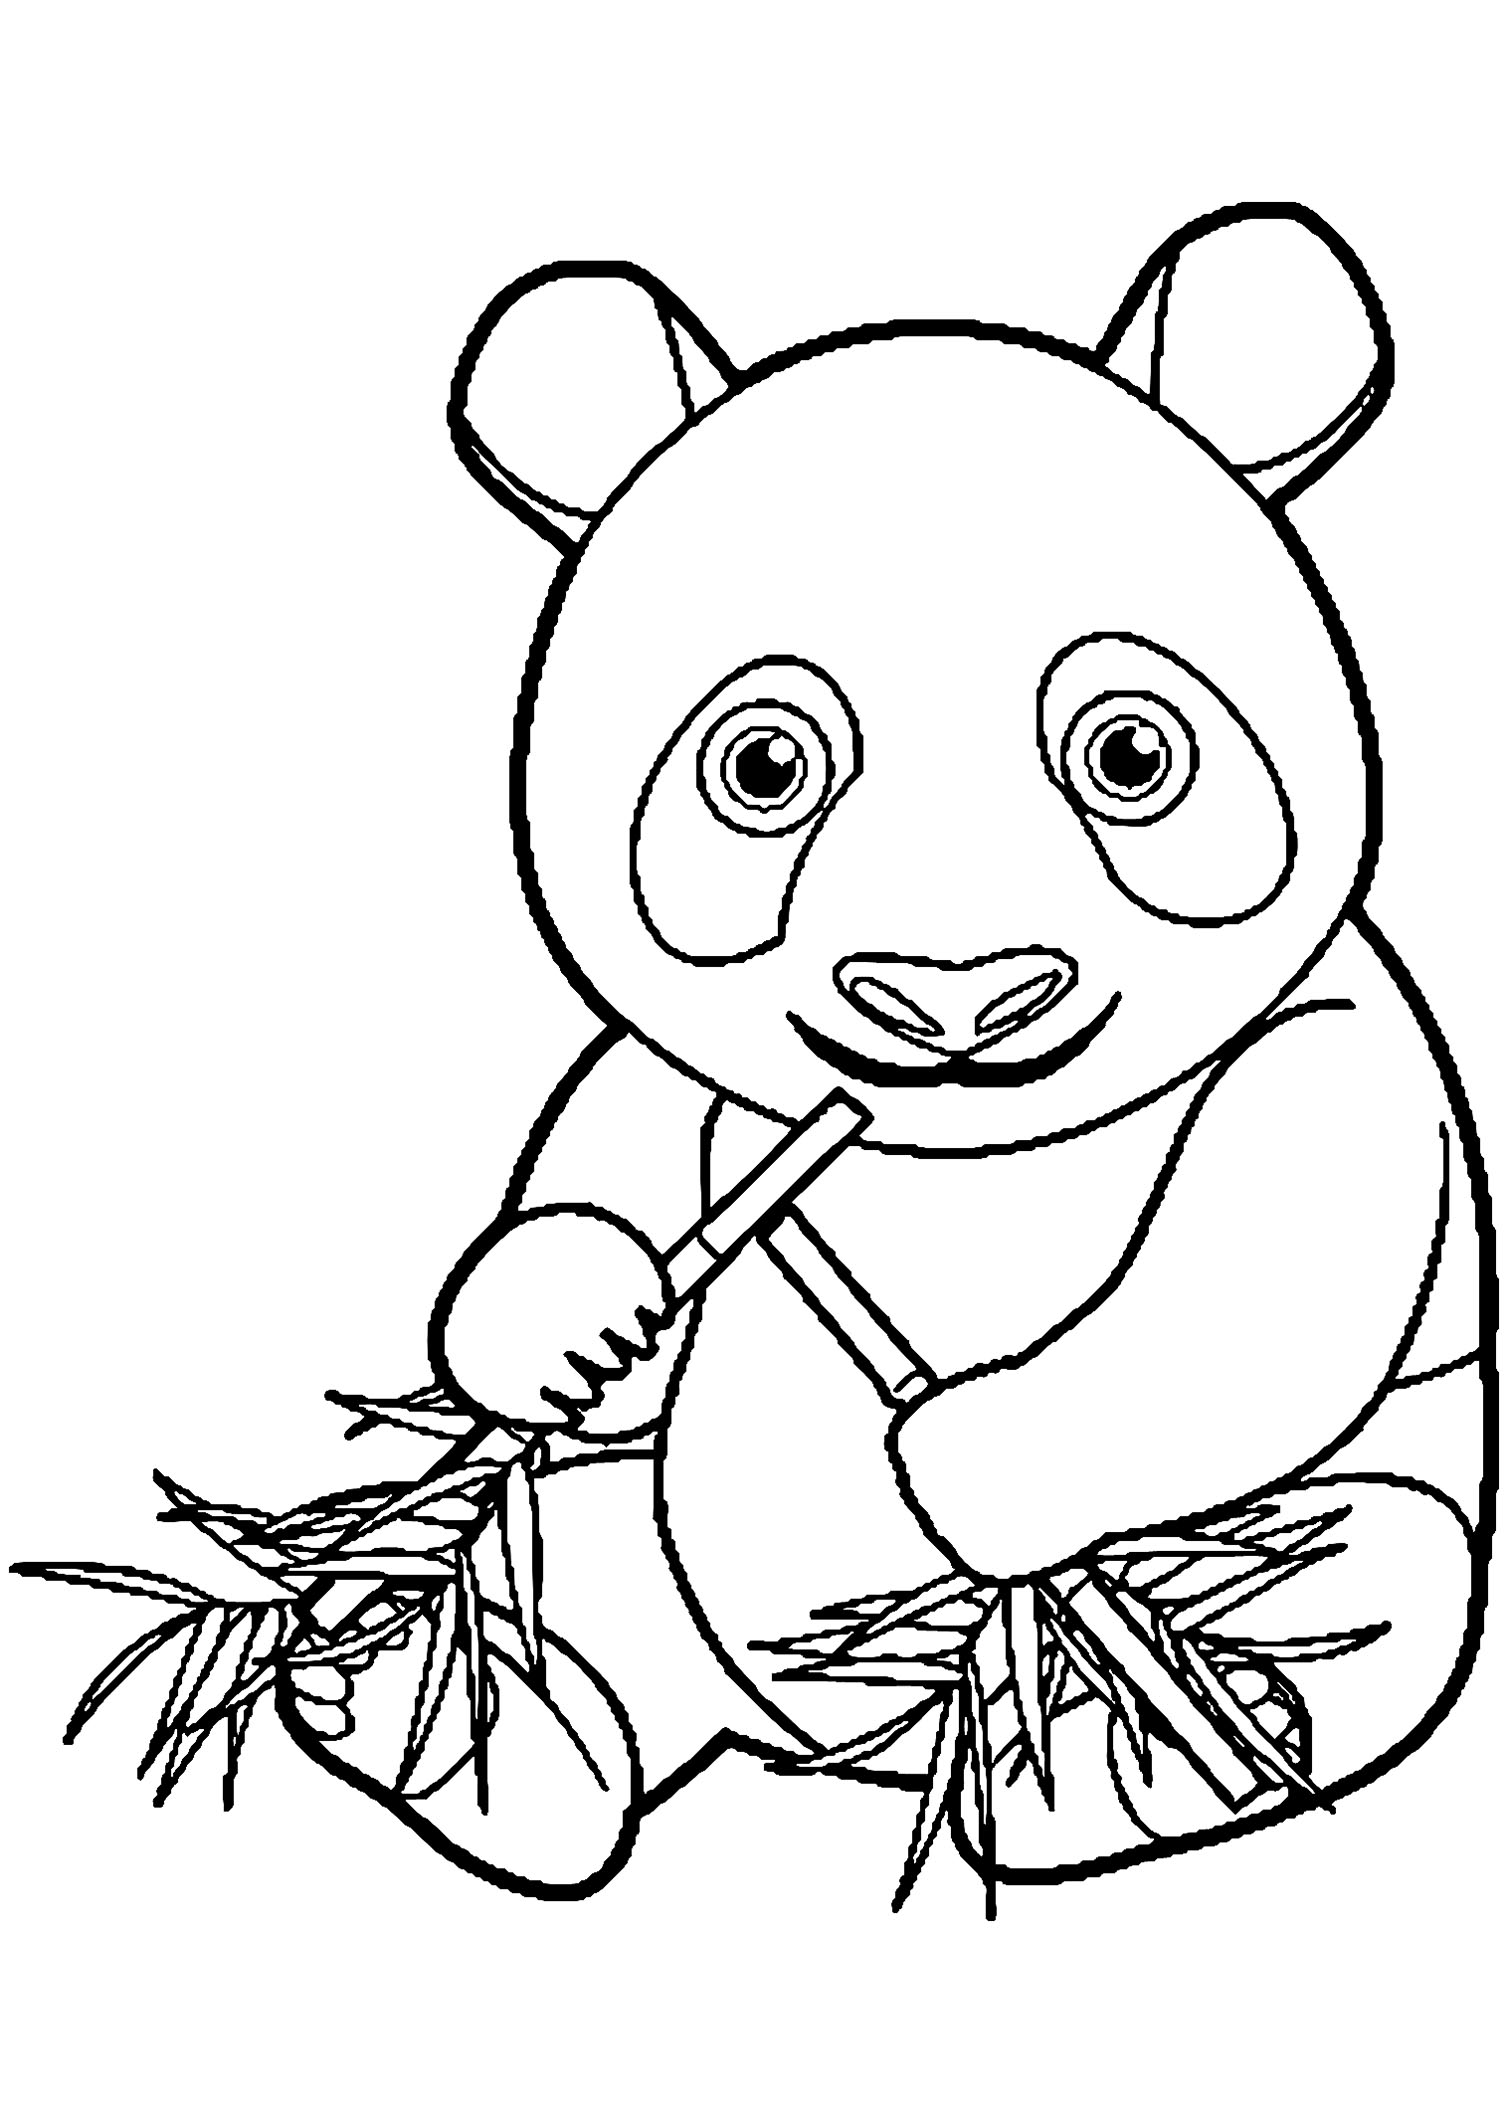 Coloriage d'un panda mangeant du bambou